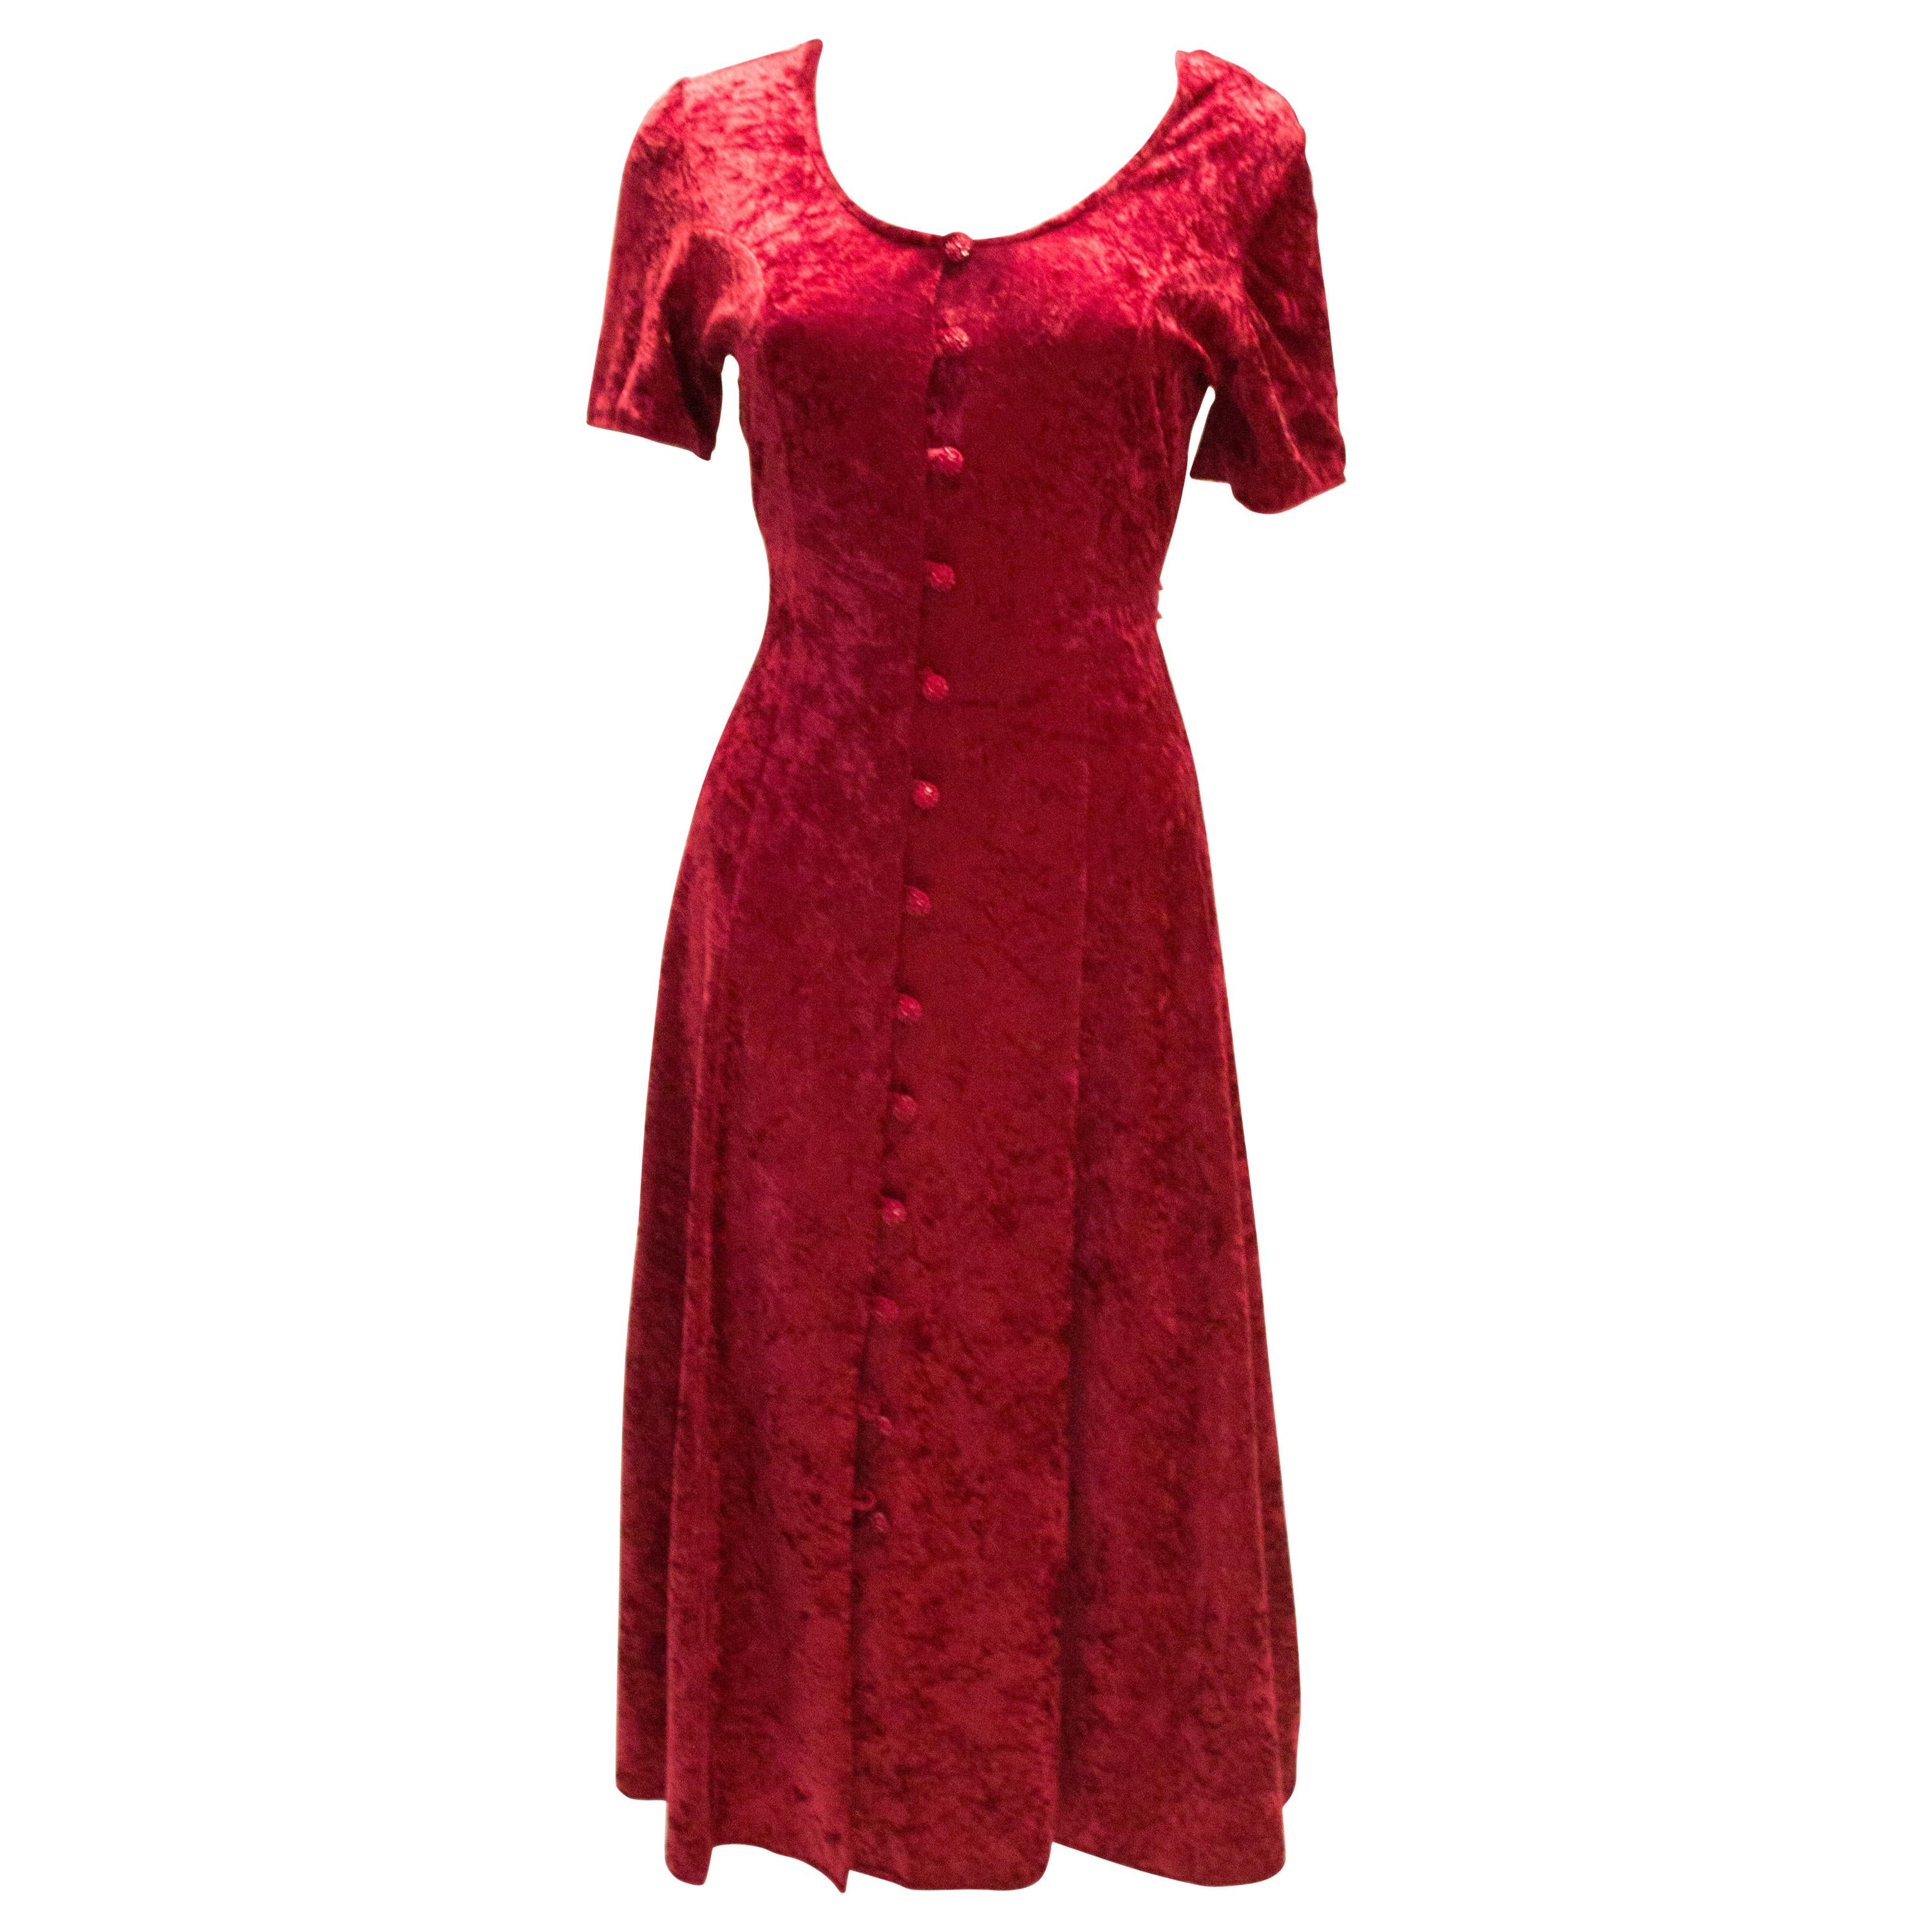 Vintage Red Crushed Velvet Dress